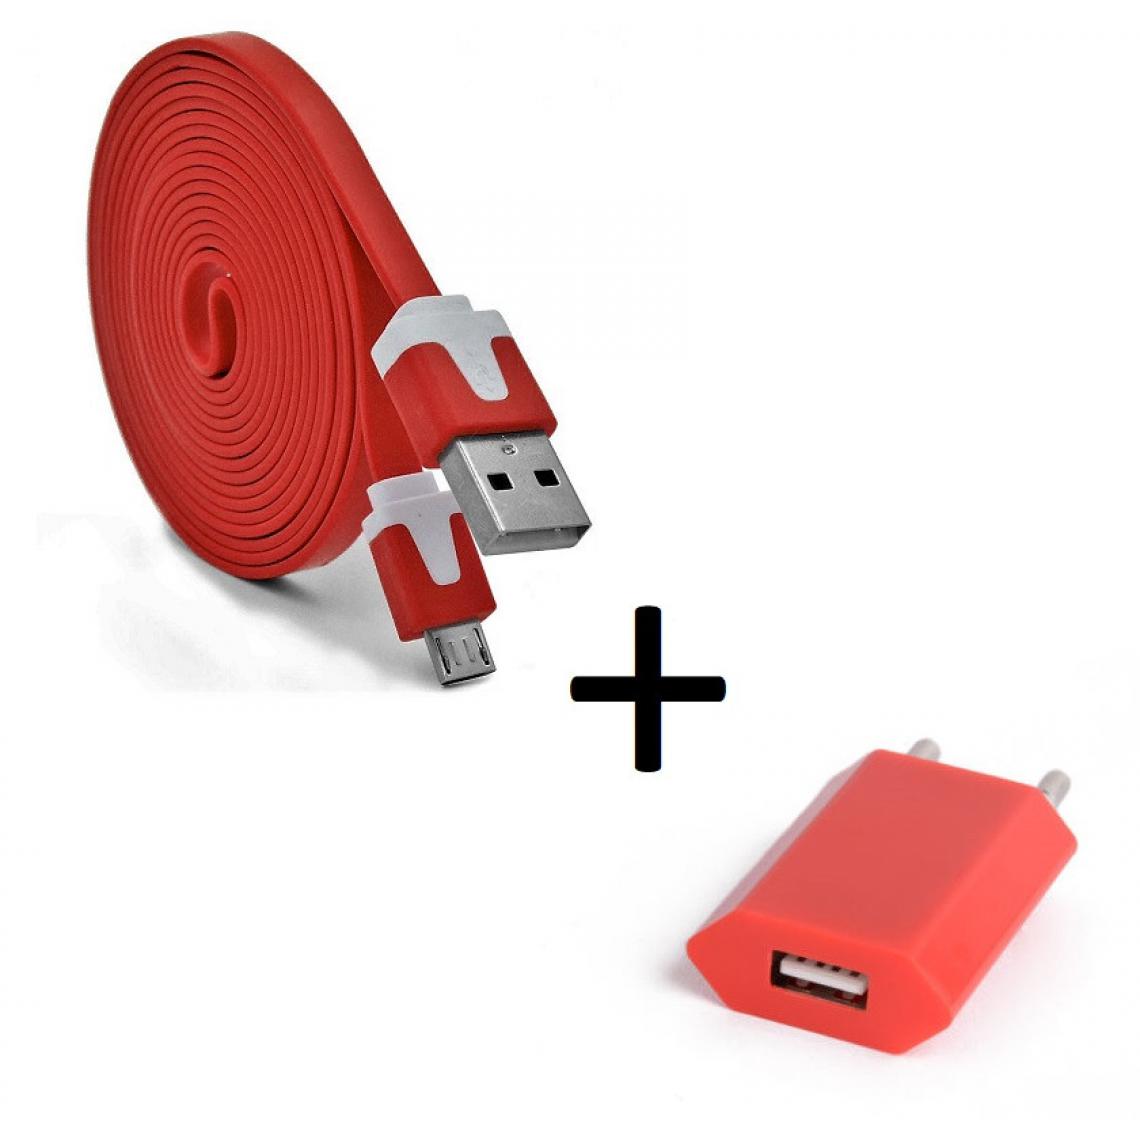 Shot - Pack Chargeur pour XIAOMI Redmi S2 Micro USB (Cable Noodle 3m + Prise Secteur Couleur USB) Android (ROUGE) - Chargeur secteur téléphone